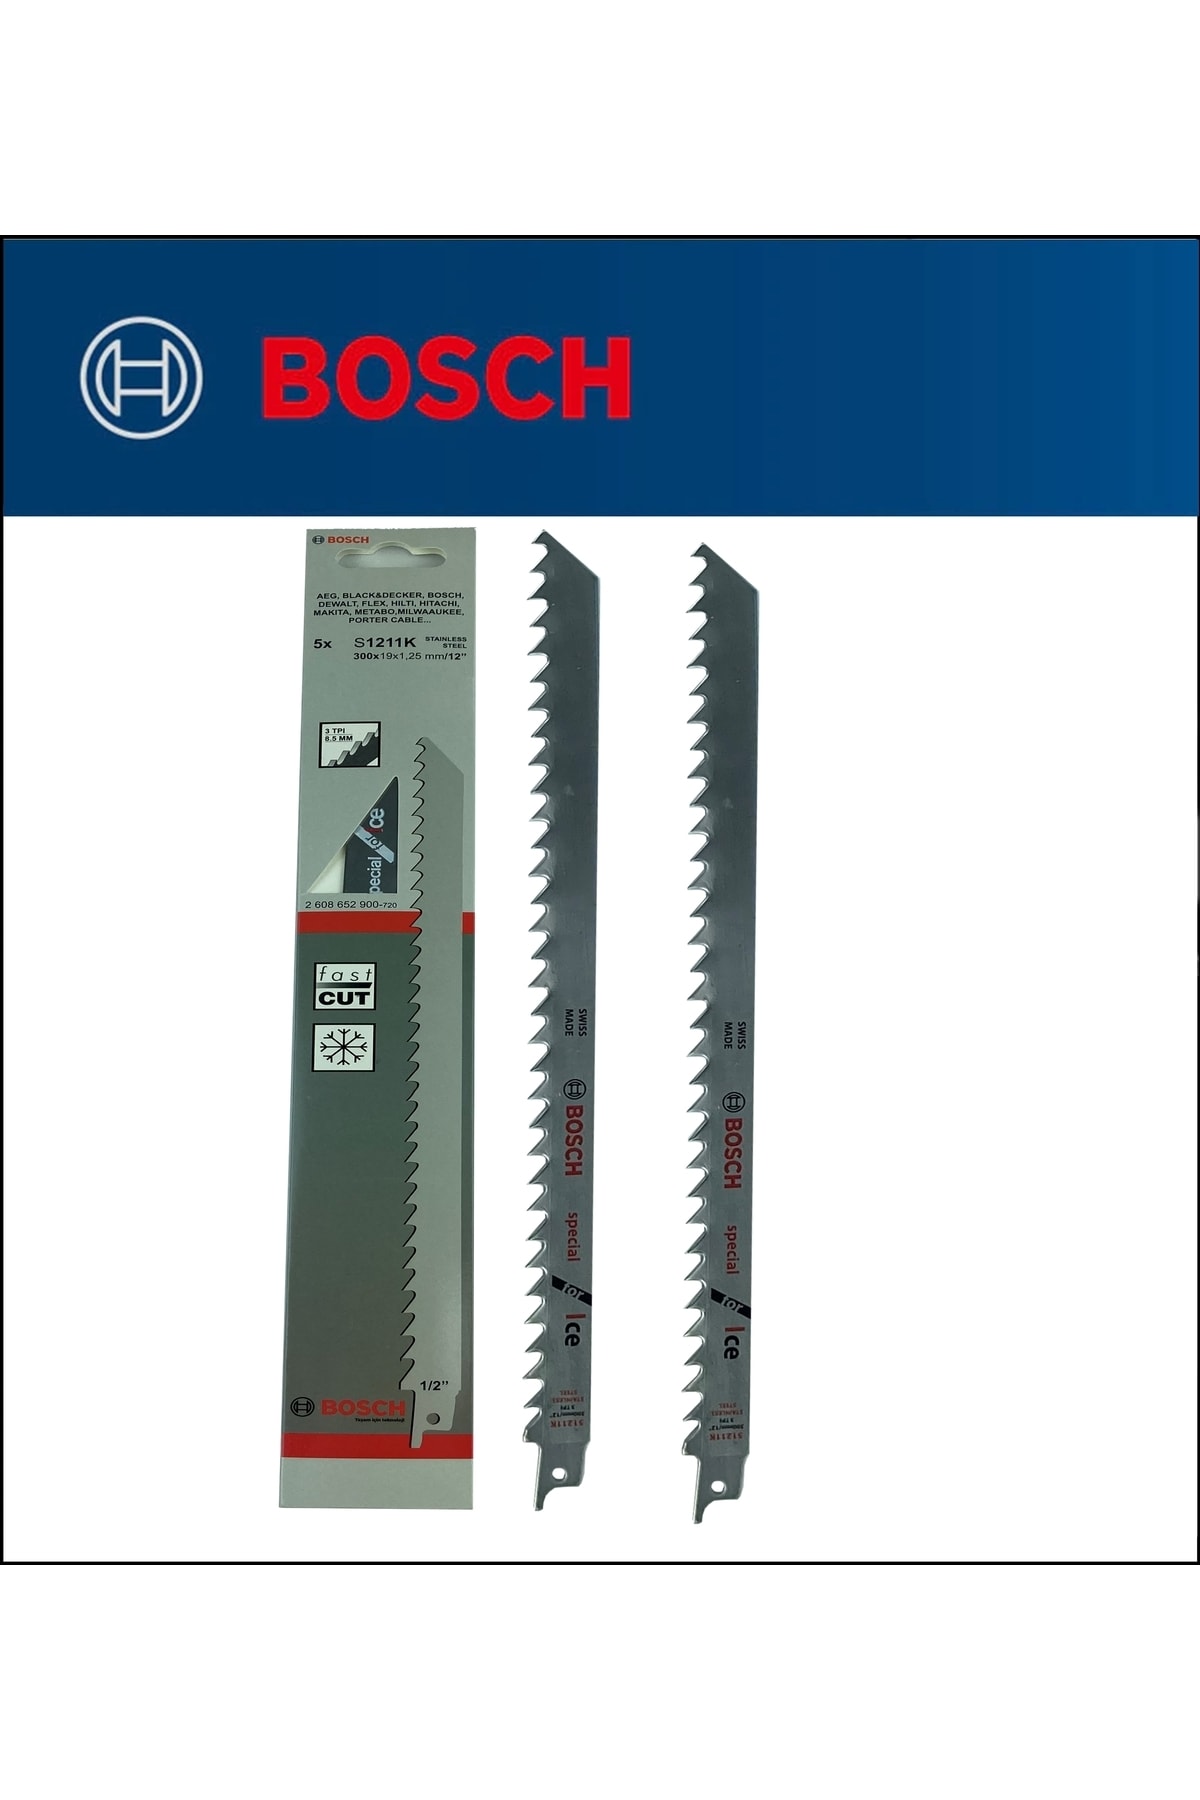 Bosch - Tilki Kuyruğu Bıçağı S 1211 K - Buz Ve Kemik Kesme 2'li Paket